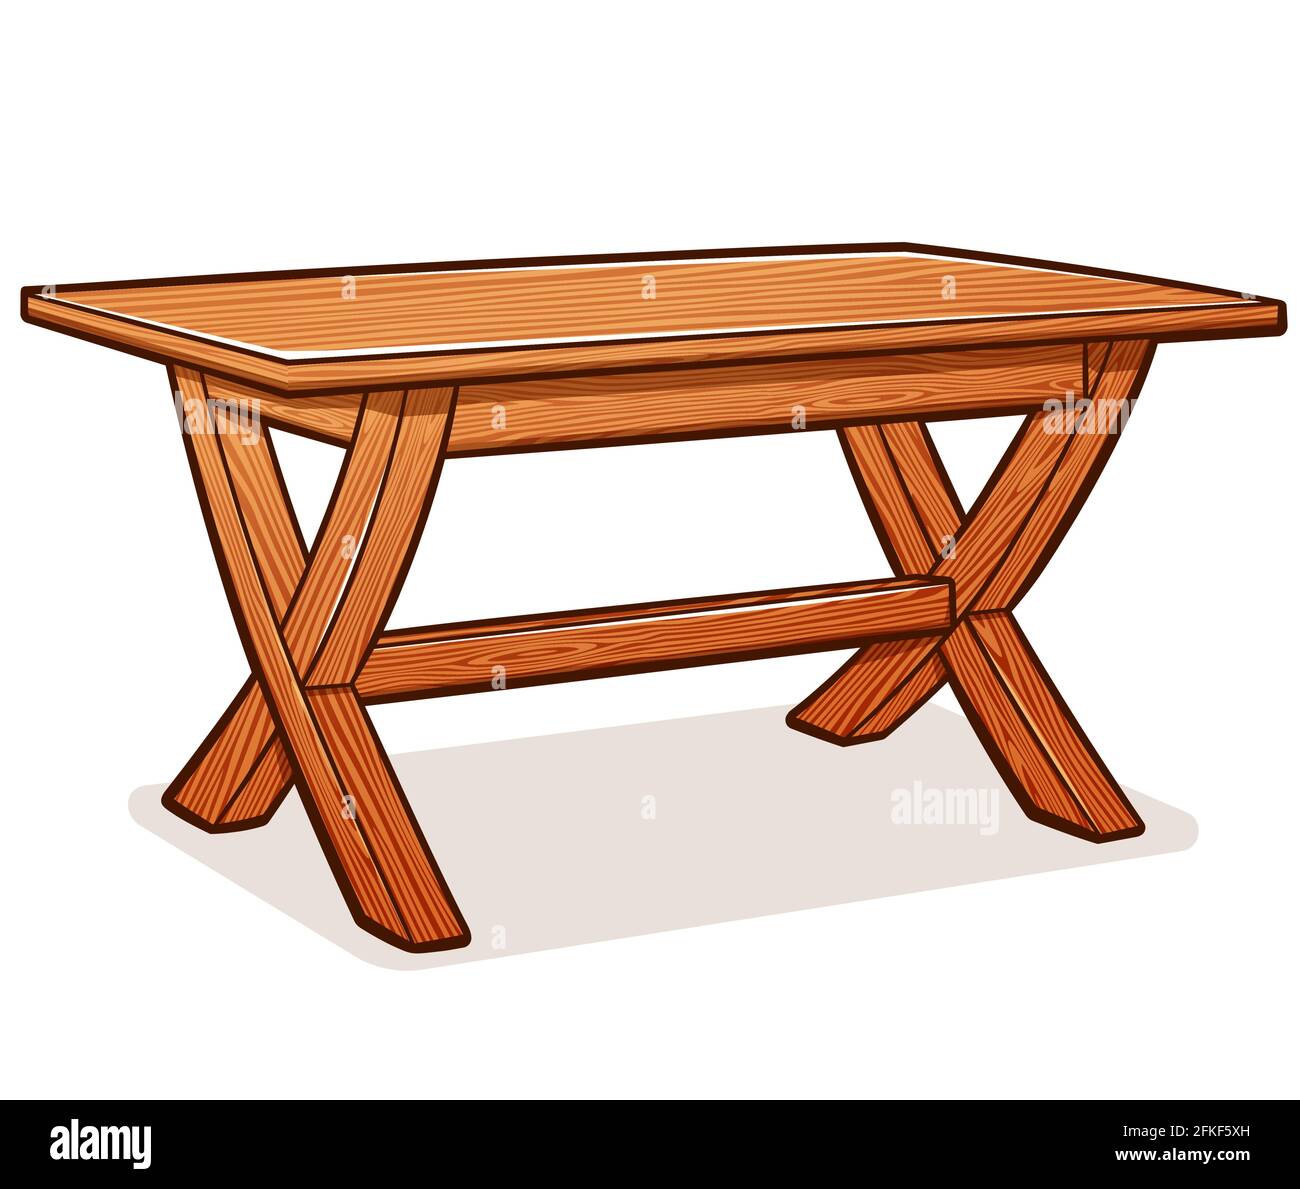 Ilustración vectorial de dibujos animados rústicos de mesa de madera Ilustración del Vector